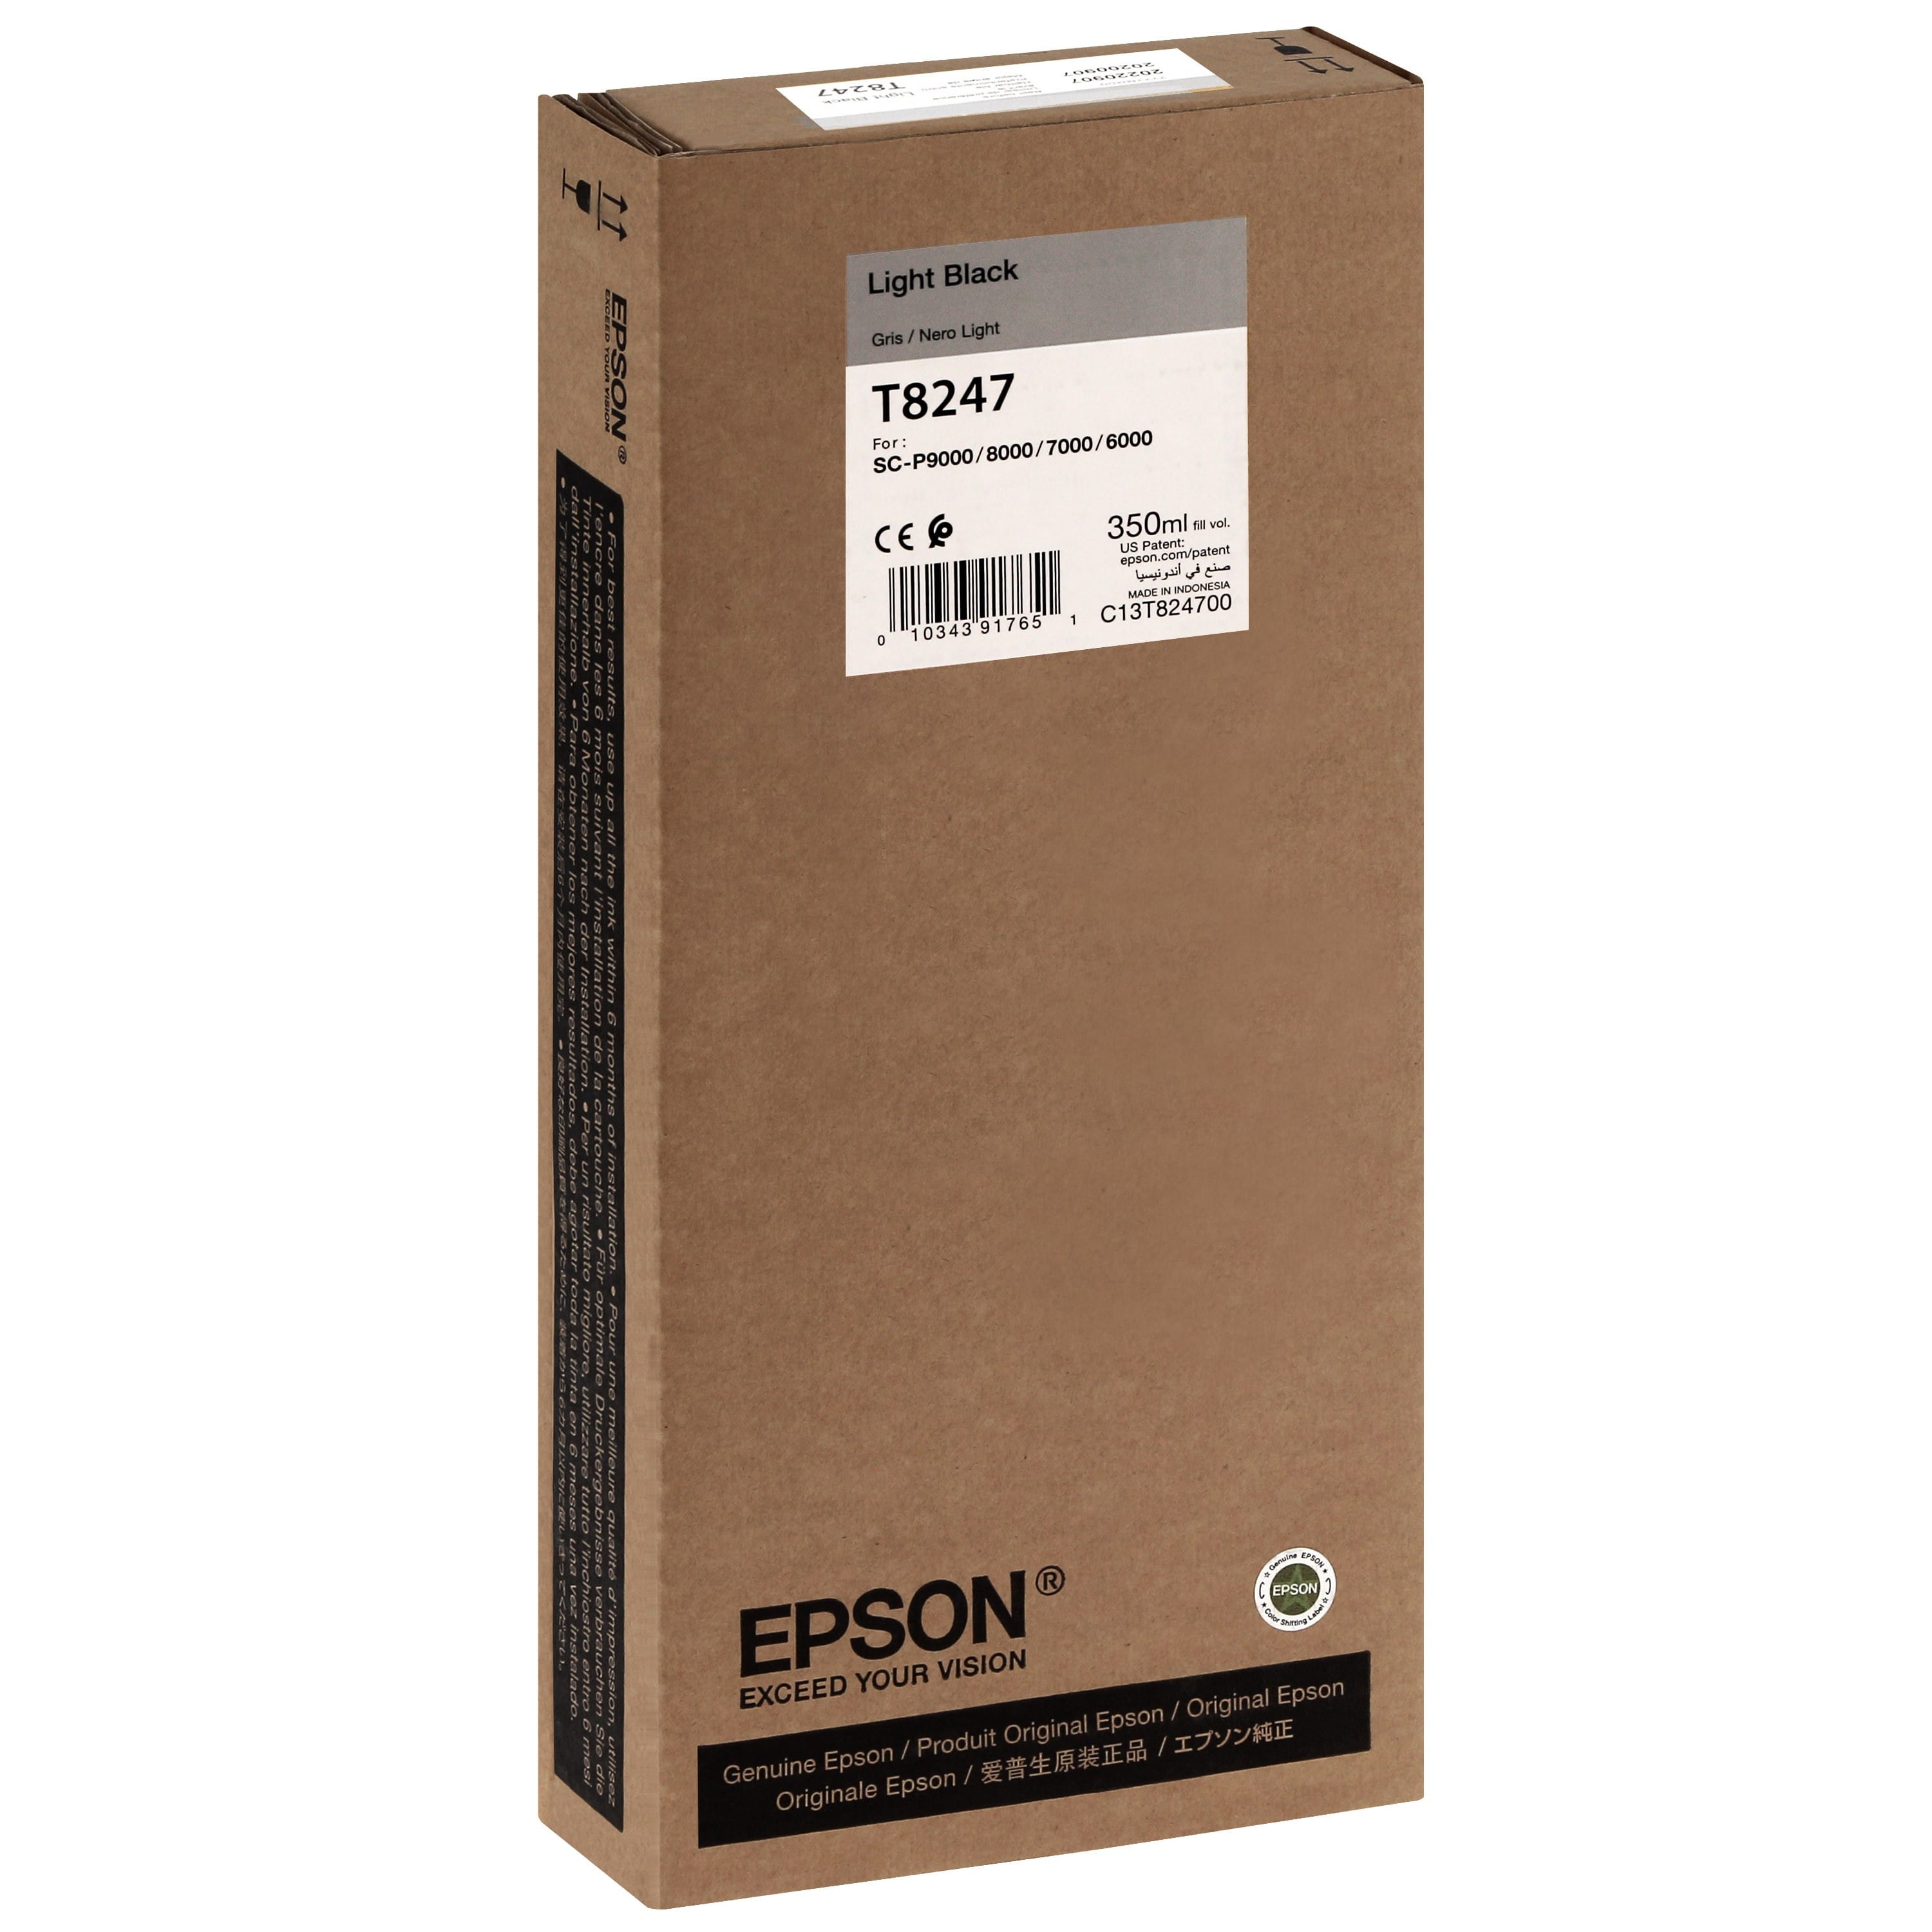 EPSON - Cartouche d'encre traceur T8247 Pour imprimante SC-P6000/7000/7000V/8000/9000/9000V Light noir - 350ml